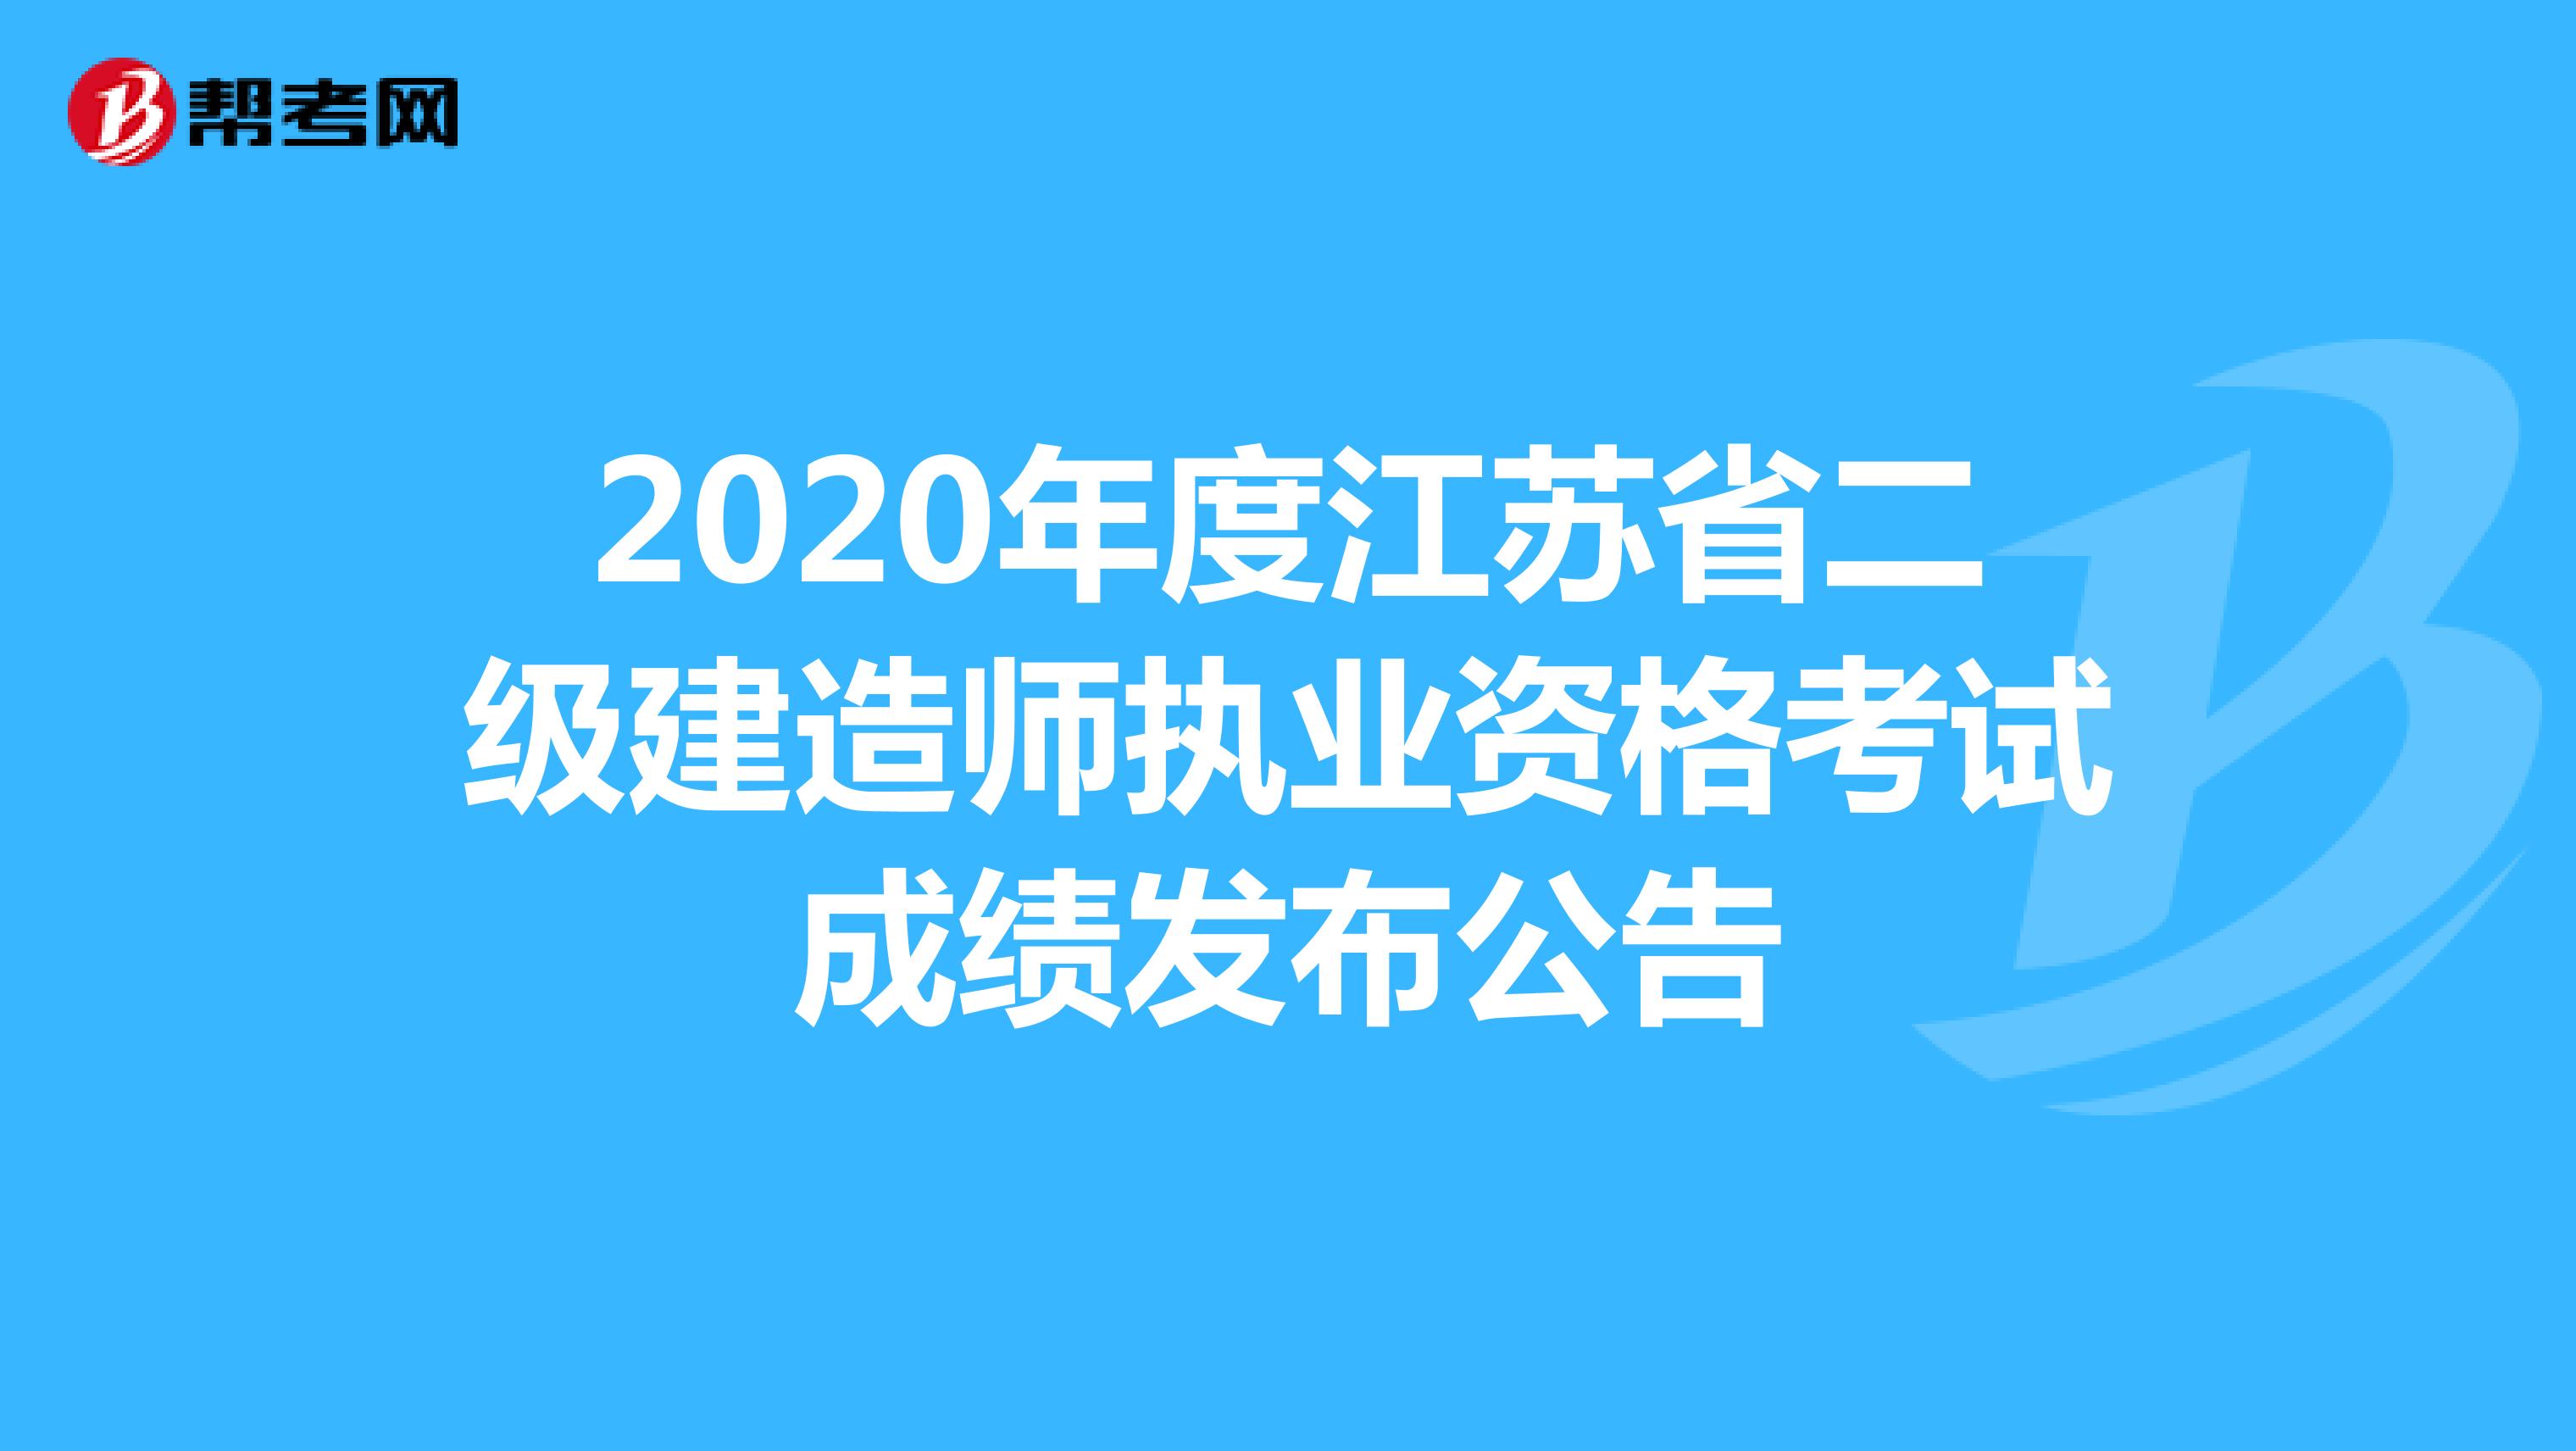 2020年度江苏省二级建造师执业资格考试成绩发布公告